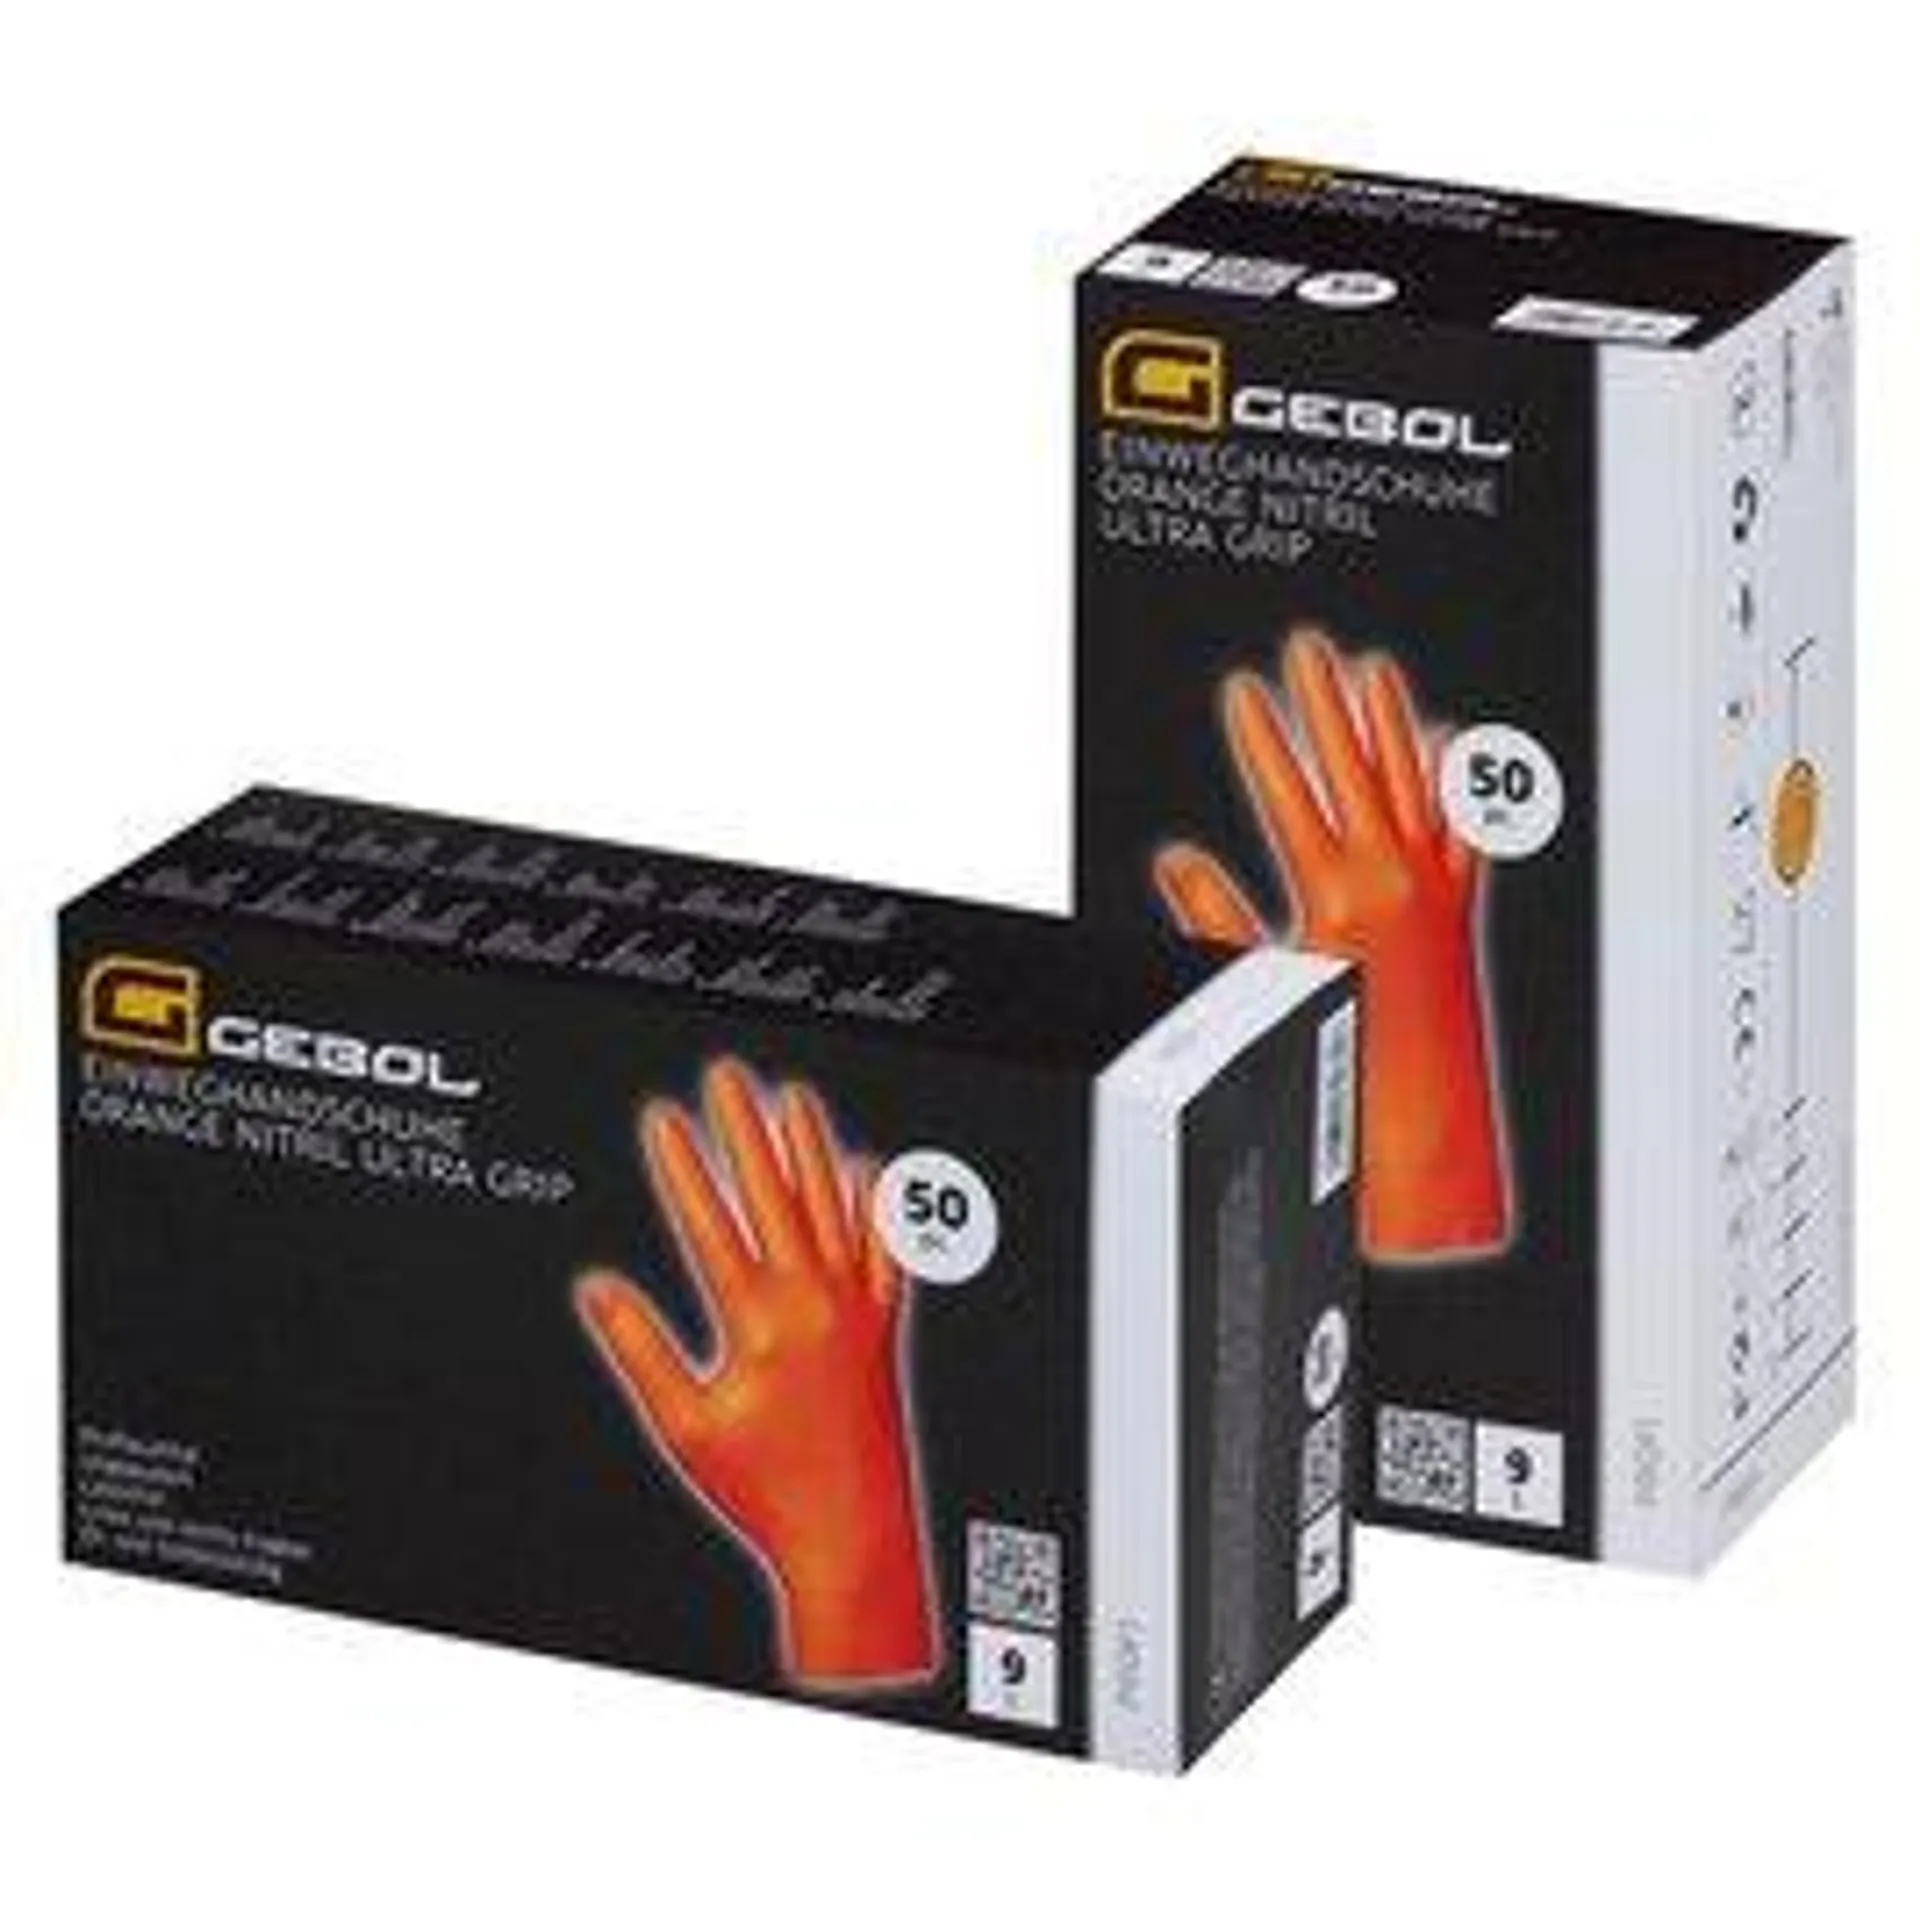 GEBOL Einweghandschuh "Orange Nitril Ultra Grip" ungepudert Gr. XL, 50 Stück